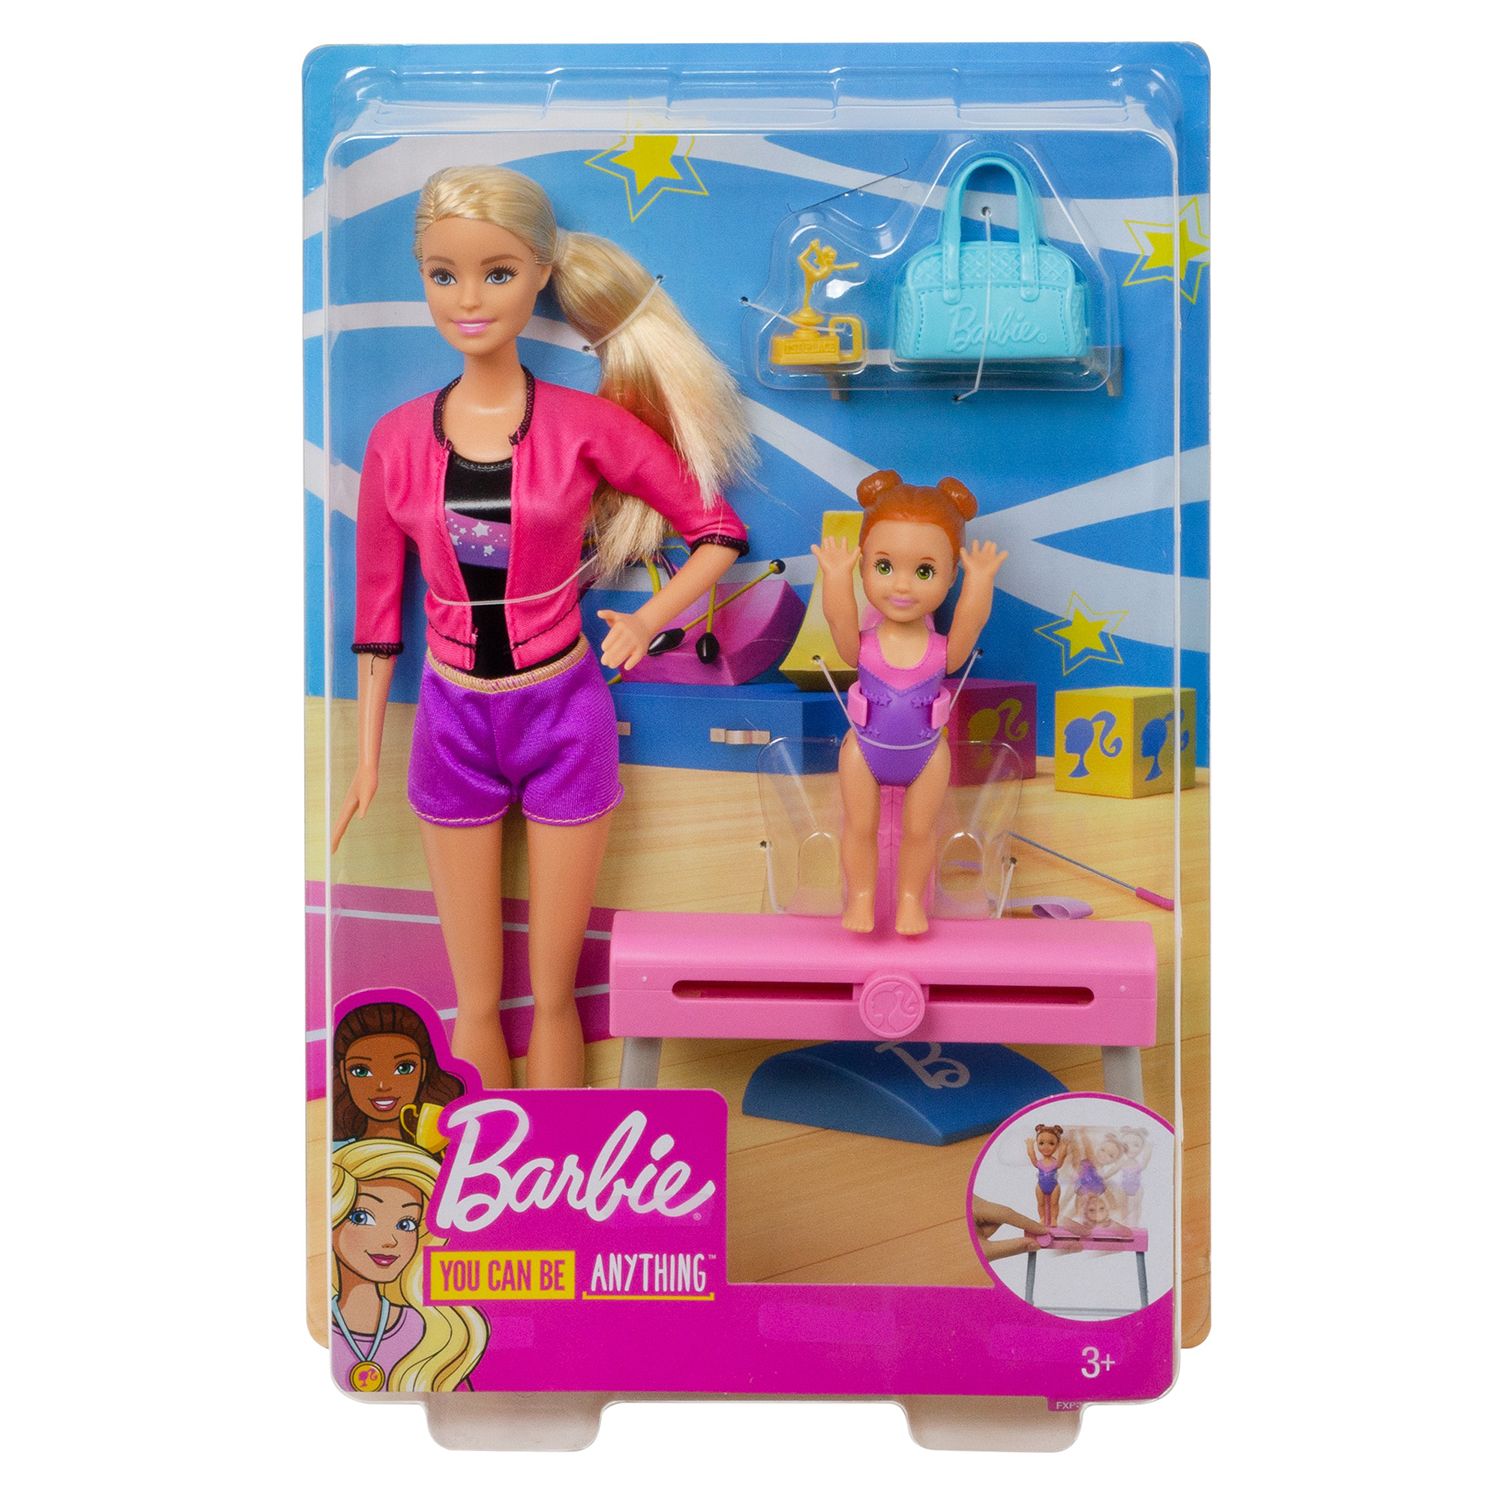 barbie gymnastics coach